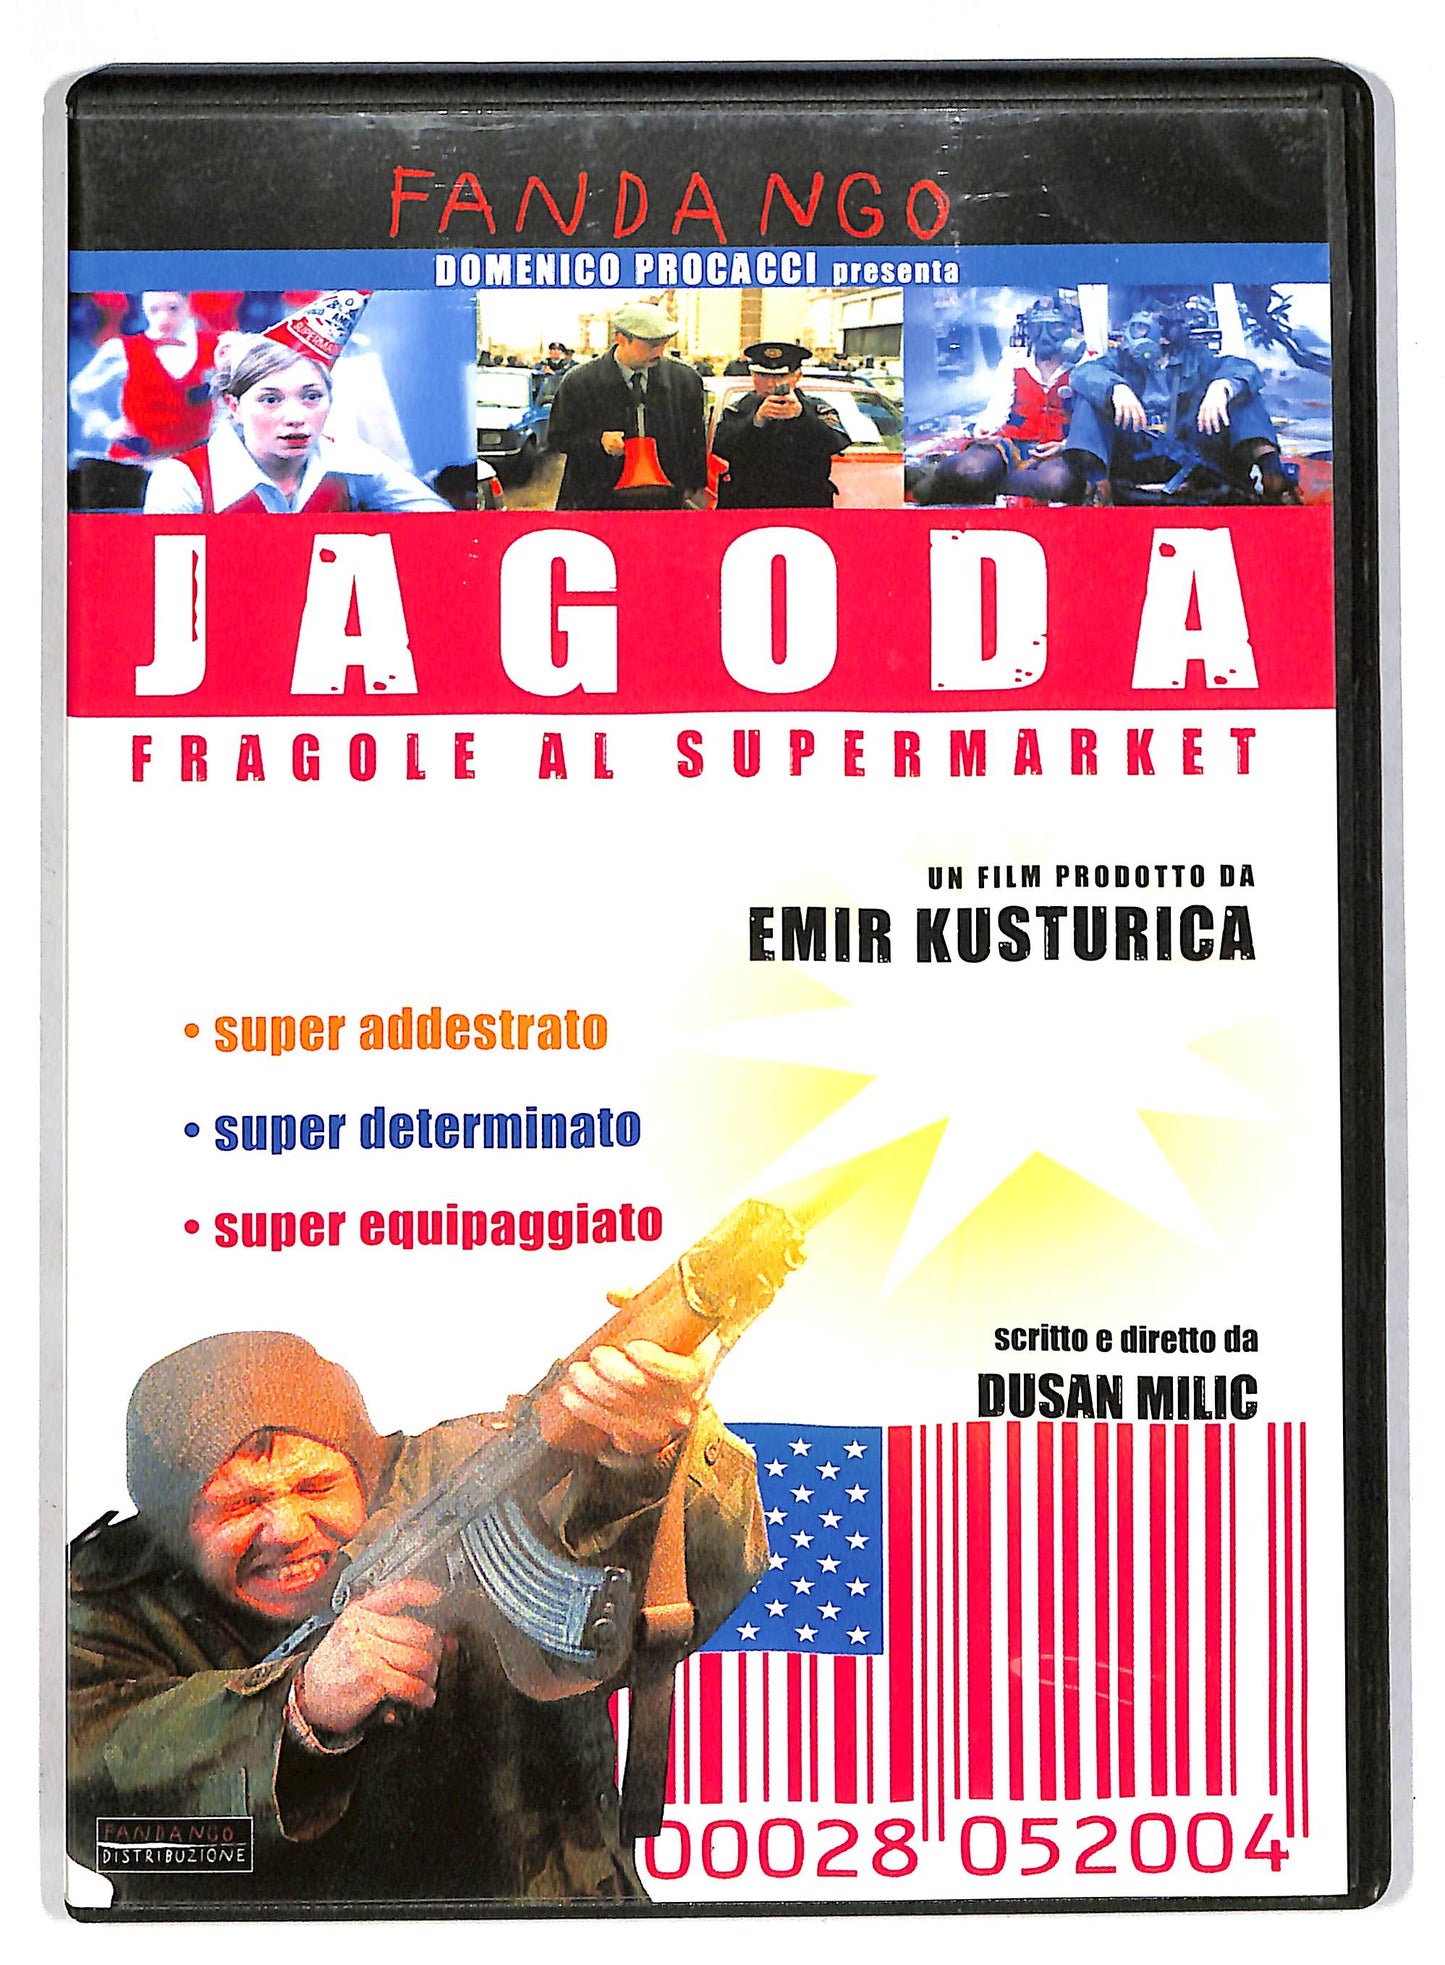 EBOND Jagoda Fragole al supermarket DVD D815333